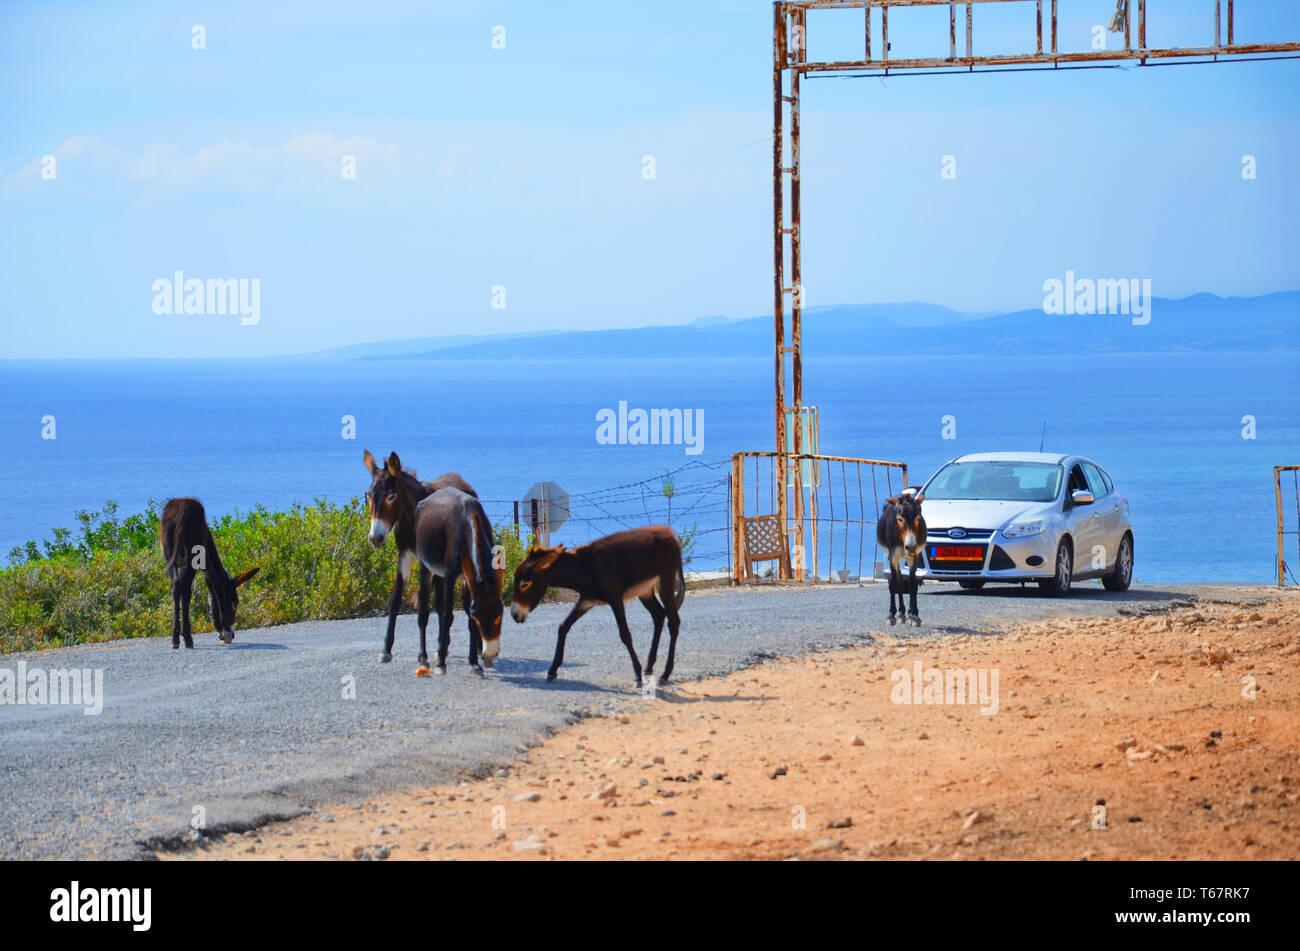 Karpaz Halbinsel, Nordzypern - 3. Oktober 2018: Wilde Esel stehend und Essen auf einer Landstraße. Die Tiere sind den Weg des Autos. Blue sea im Foto Hintergrund. Stockfoto